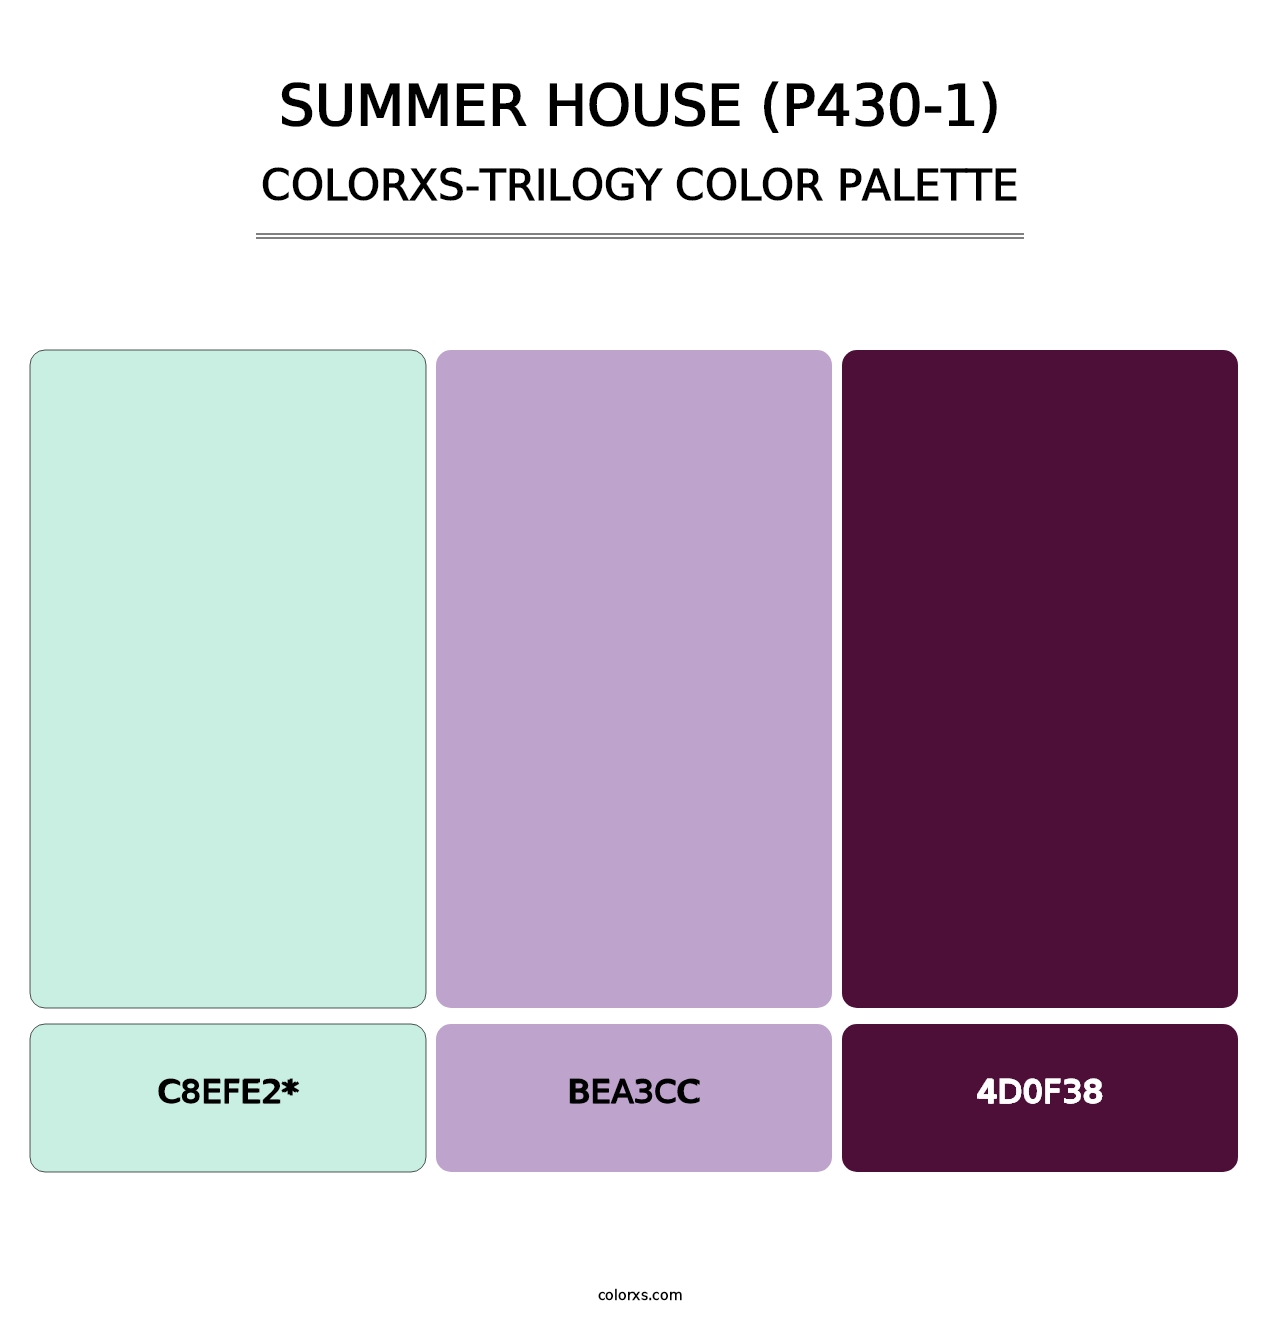 Summer House (P430-1) - Colorxs Trilogy Palette